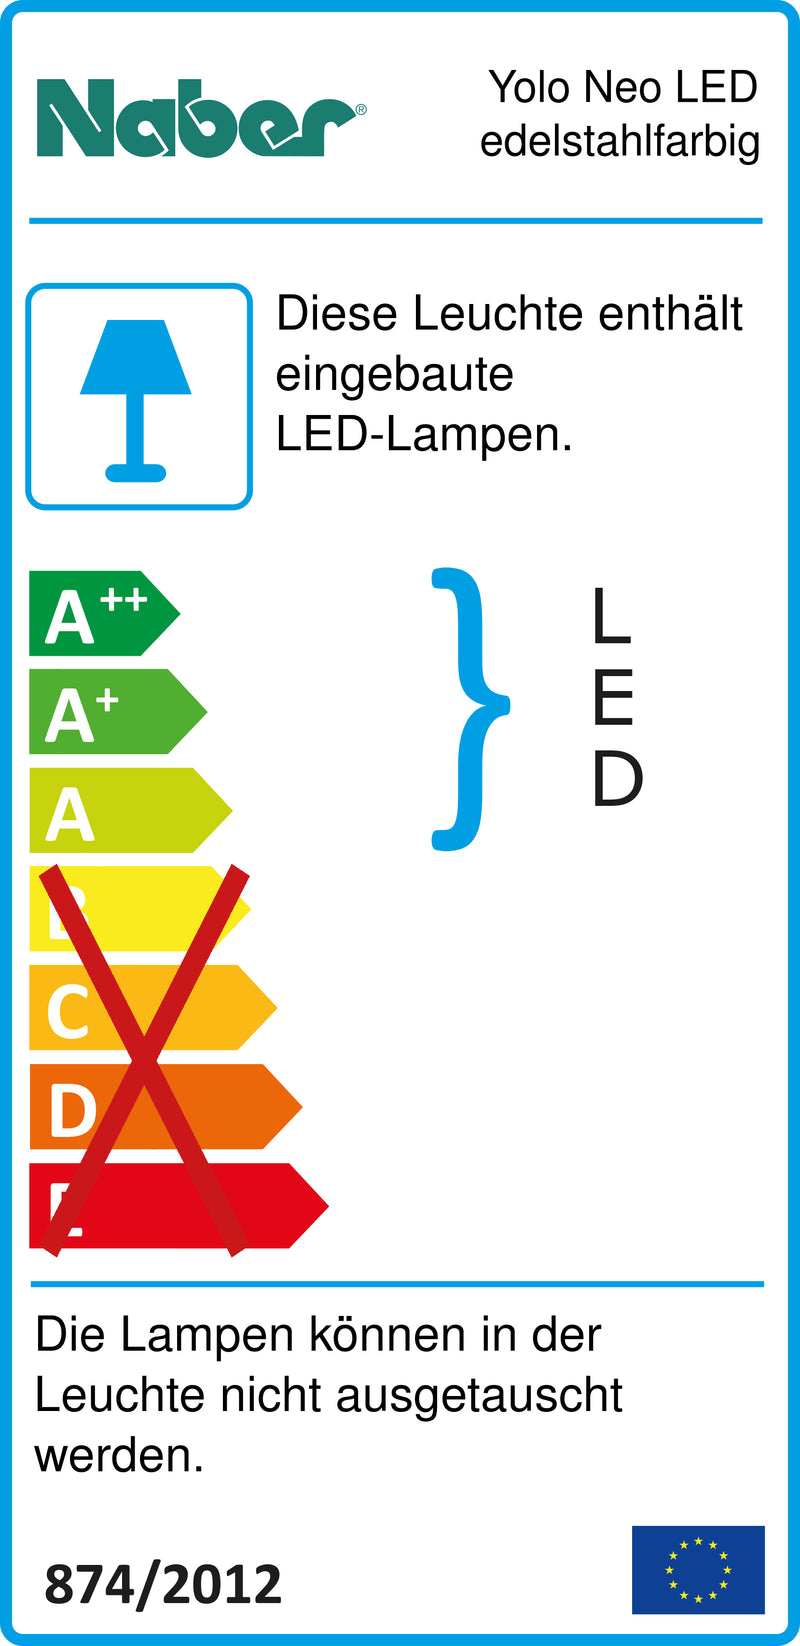 E-Label zu Zeichnung zu Yolo Neo LED edelstahlfarbig als Variante Einzelleuchte o. S., 3000 K warmweiß von Naber GmbH in der Kategorie Lichttechnik in Österreich auf conceptshop.at